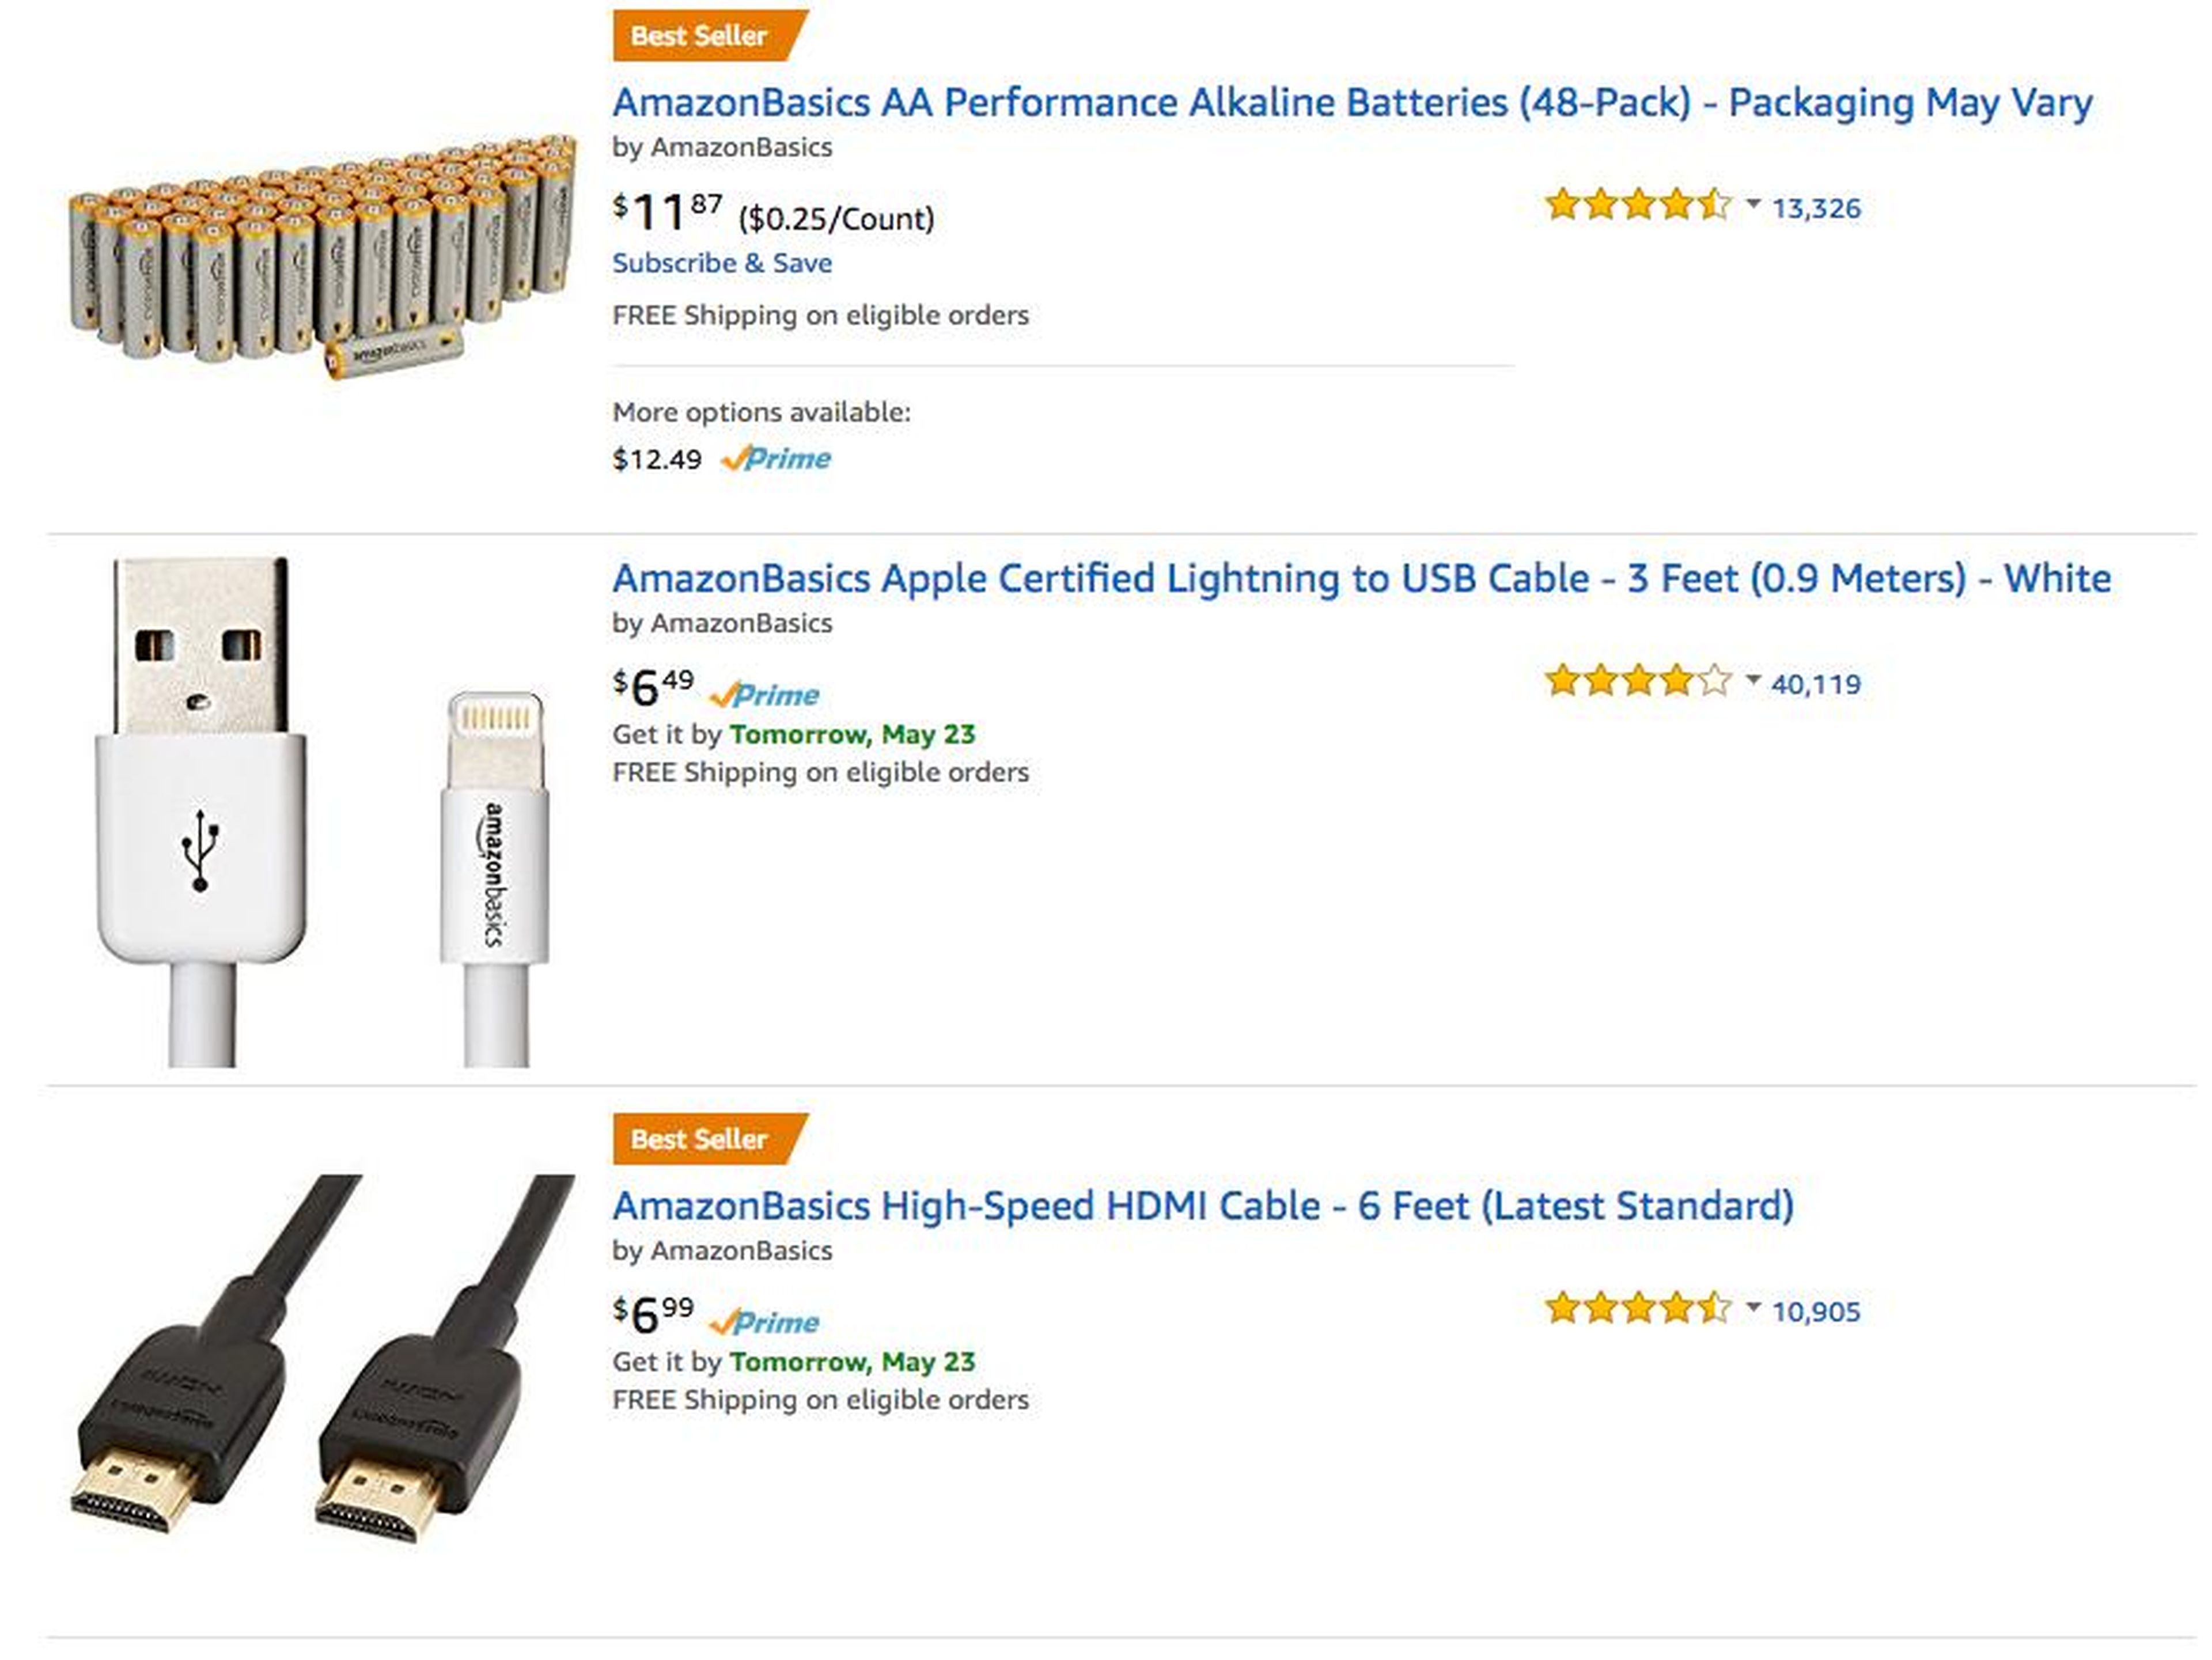 15. Amazon tiene una línea de suministros llamada Amazon Basics que es típicamente más barata que los productos de marca. Amazon vende cables para alumbrado, toallas, mochilas y más cosas de su línea Básica.